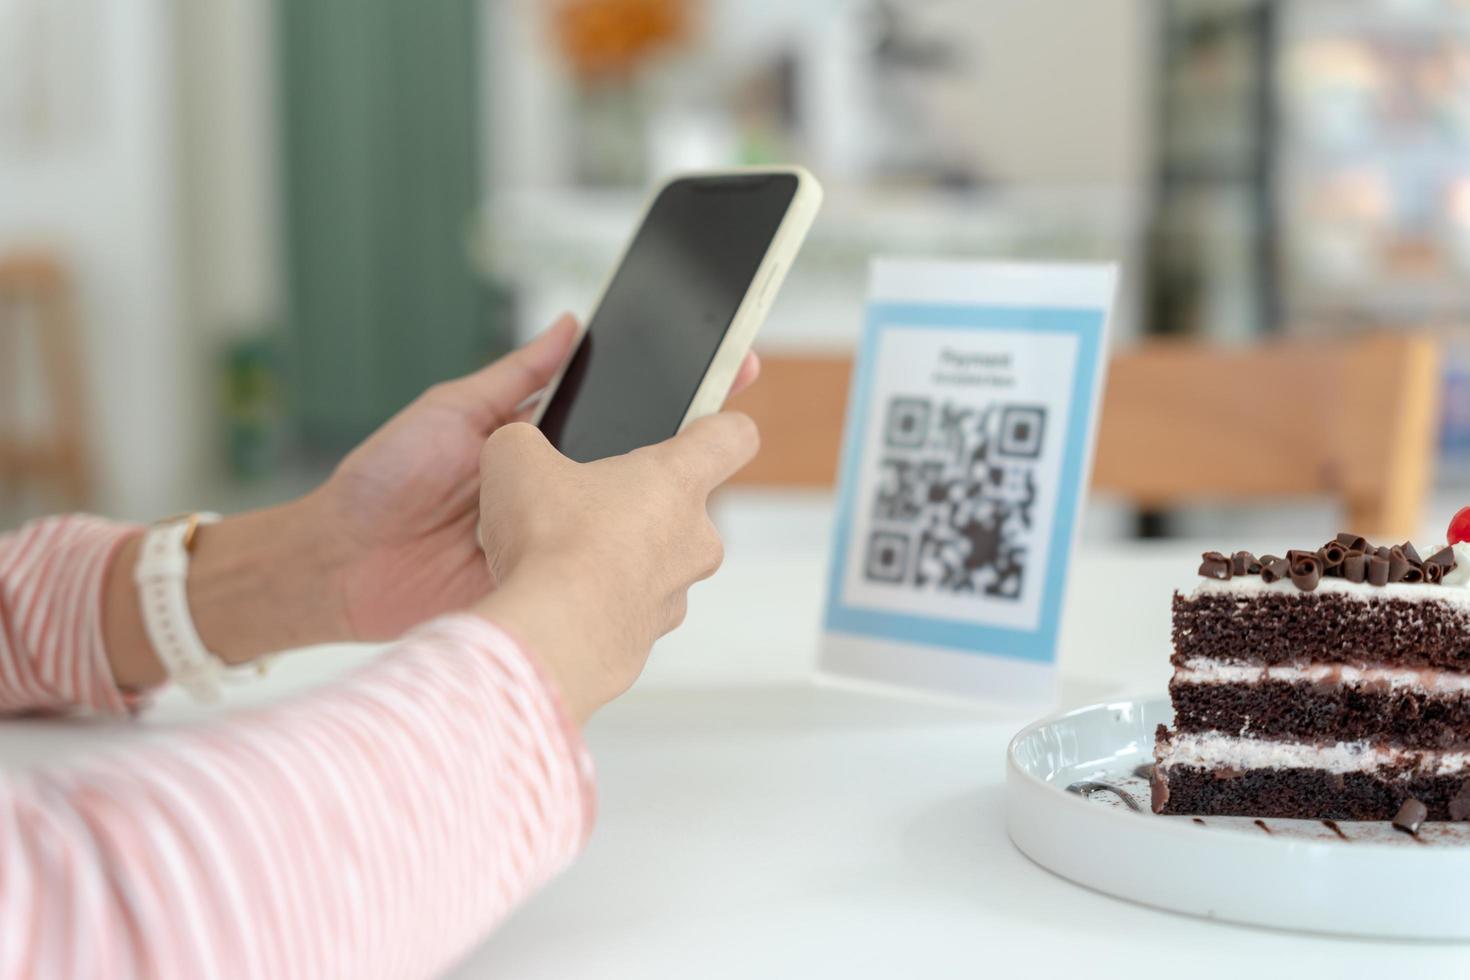 frau verwendet smartphone, um qr-code zu scannen, um im caférestaurant mit einer digitalen zahlung ohne bargeld zu bezahlen. Menü wählen und bestellen Rabatt kumulieren. E-Geldbörse, Technologie, online bezahlen, Kreditkarte, Bank-App. foto